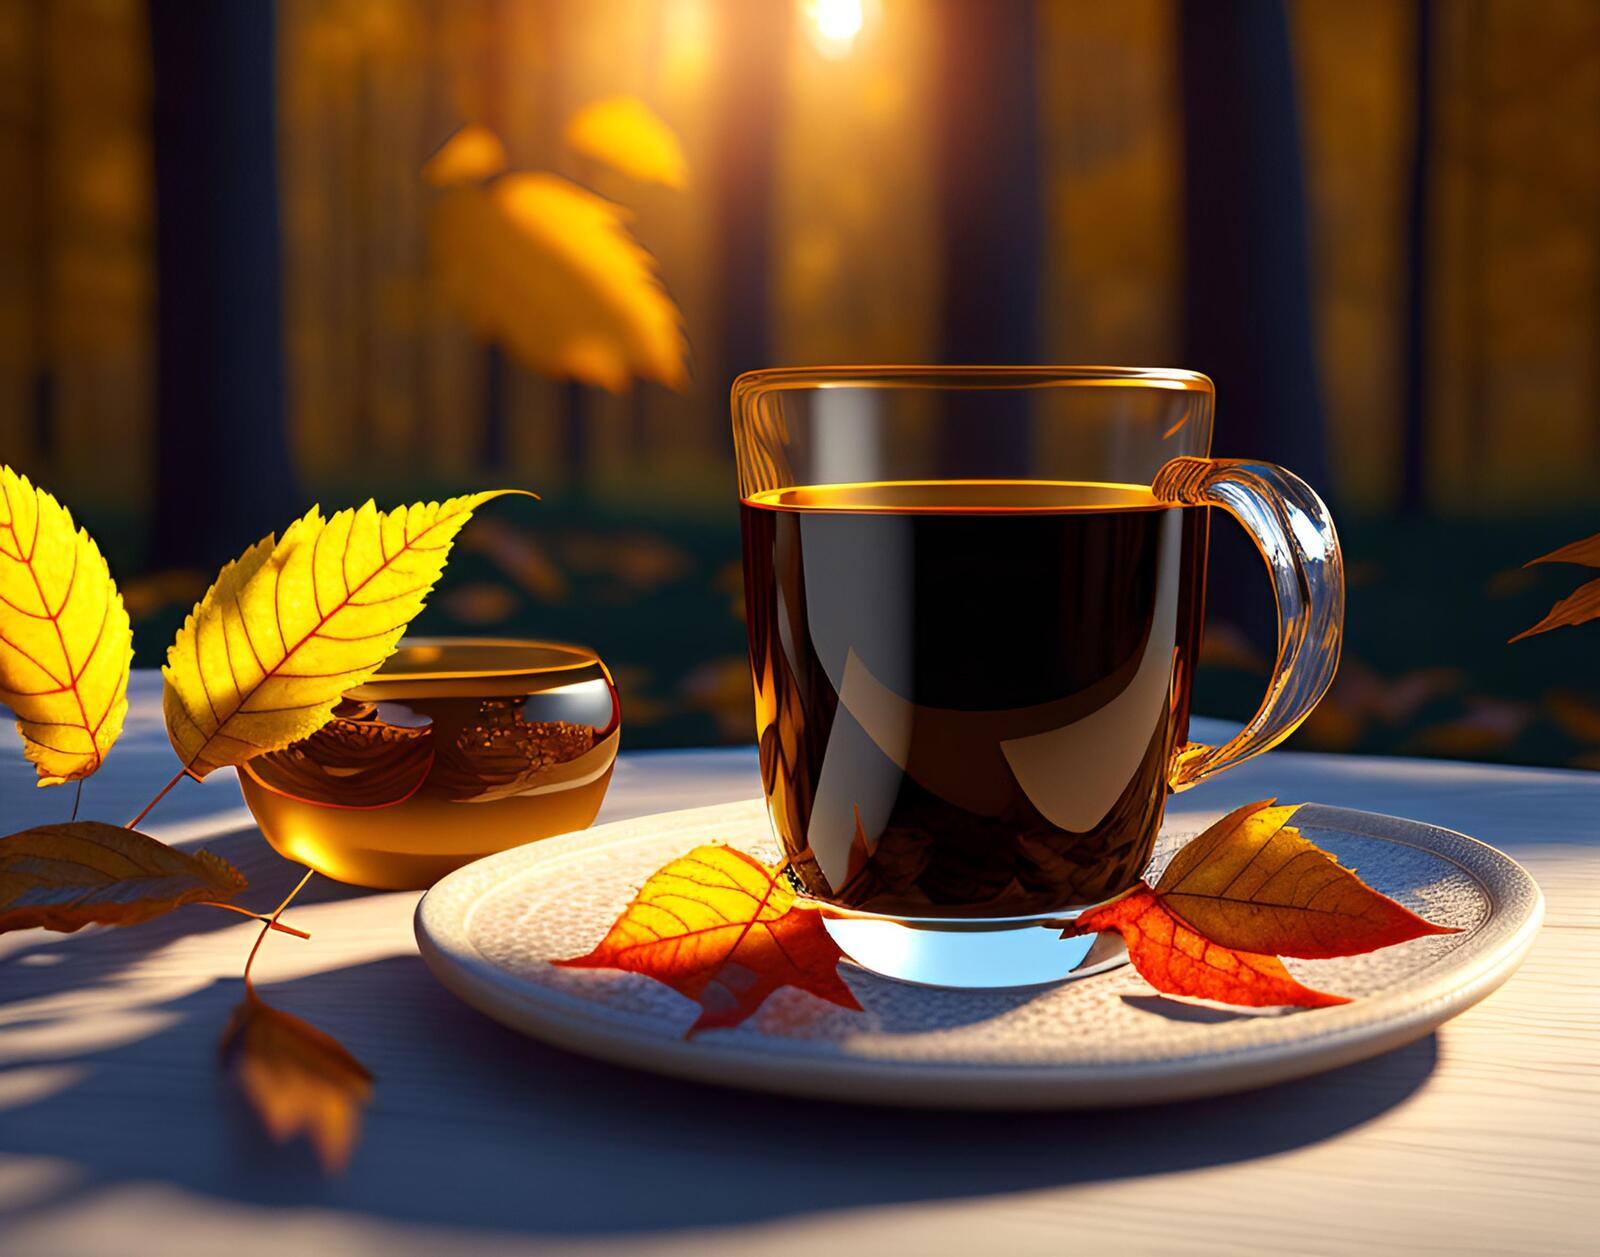 Бесплатное фото Кружка кофе с осенними опавшими листьями